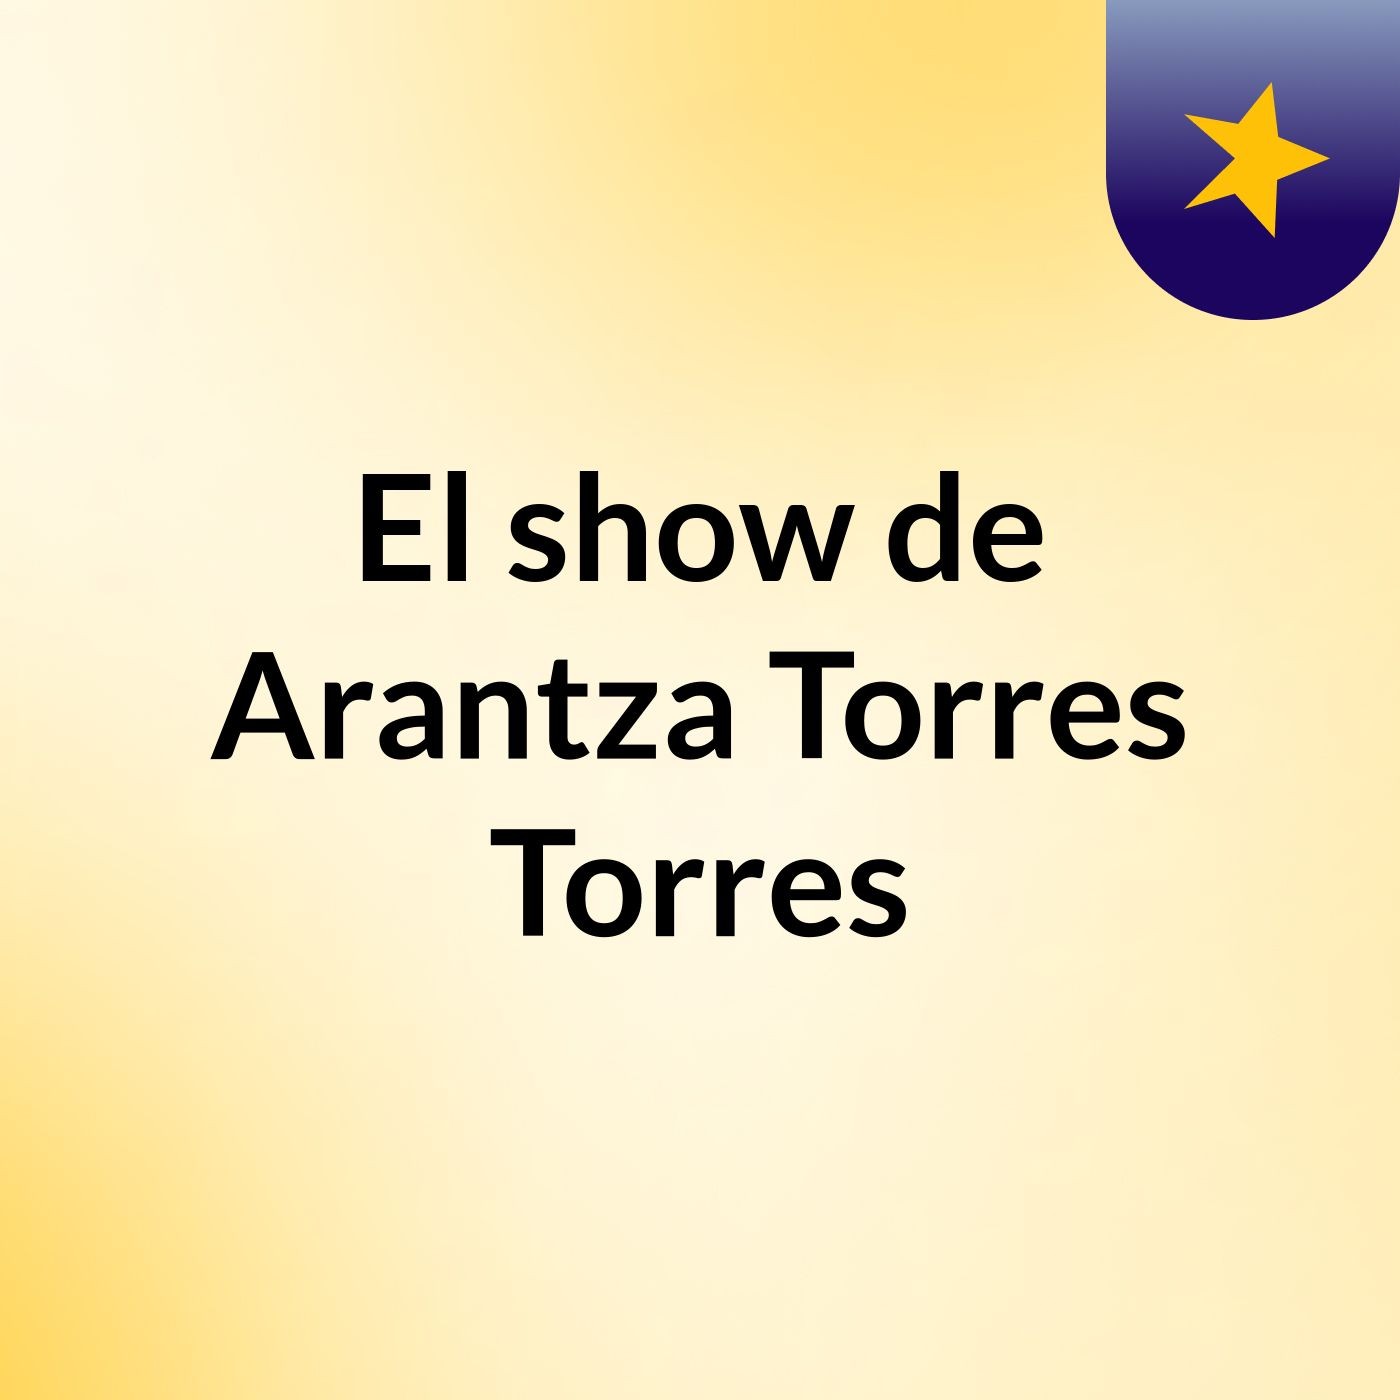 El show de Arantza Torres Torres